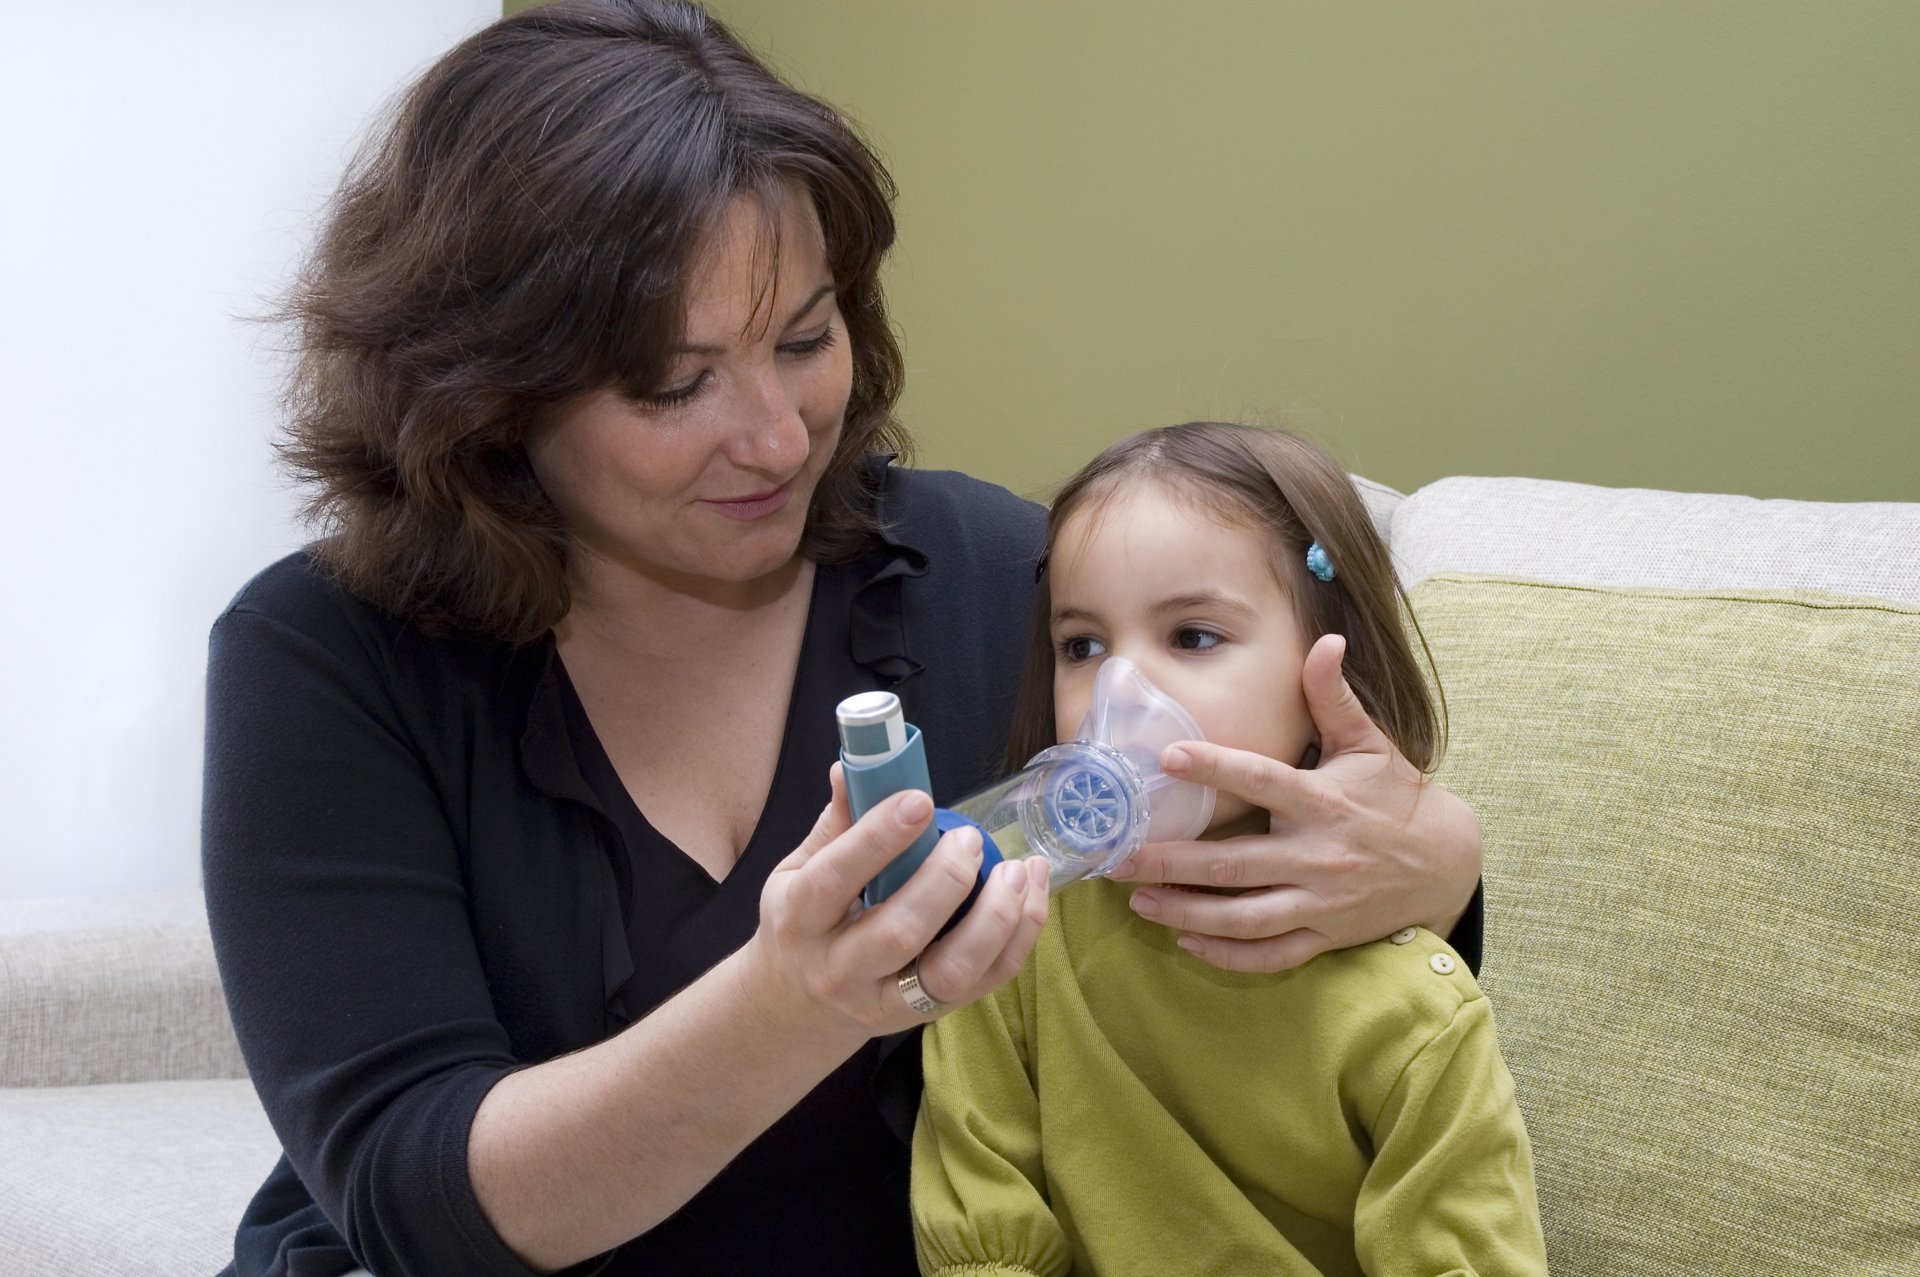 A mother helping her daughter use an inhaler